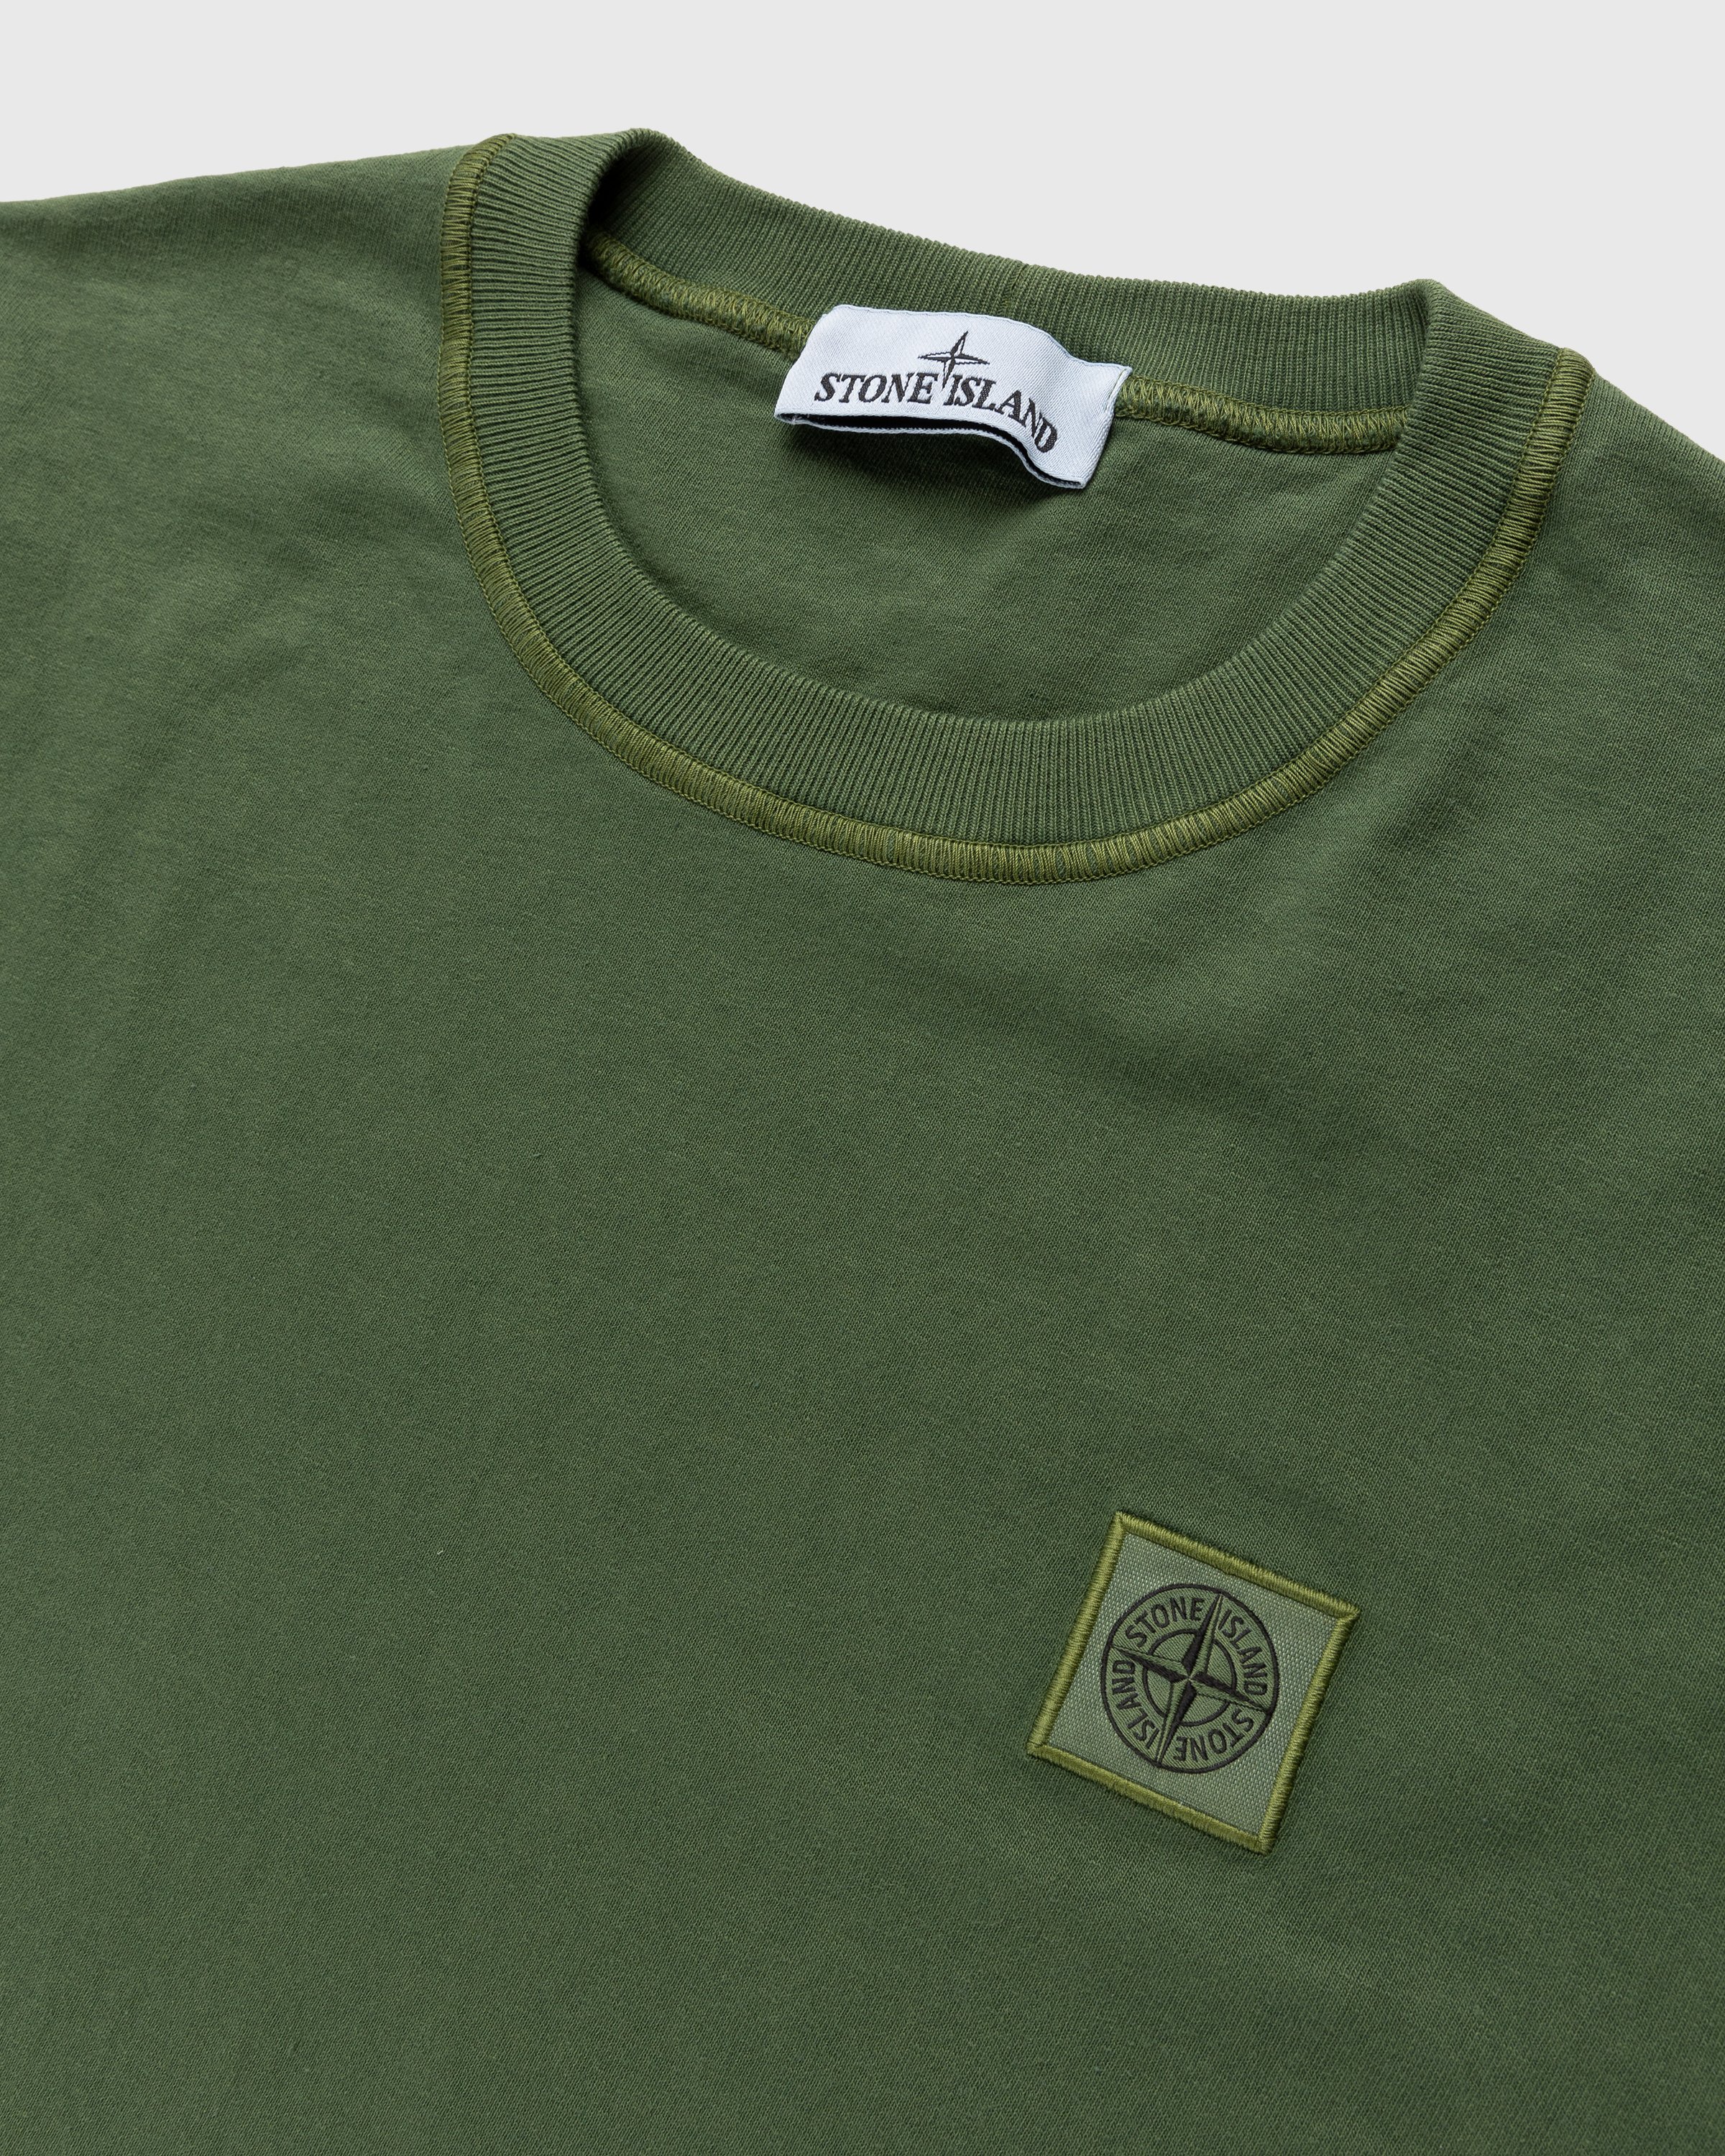 Stone Island - Fissato Longsleeve T-Shirt Olive - Clothing - Green - Image 4